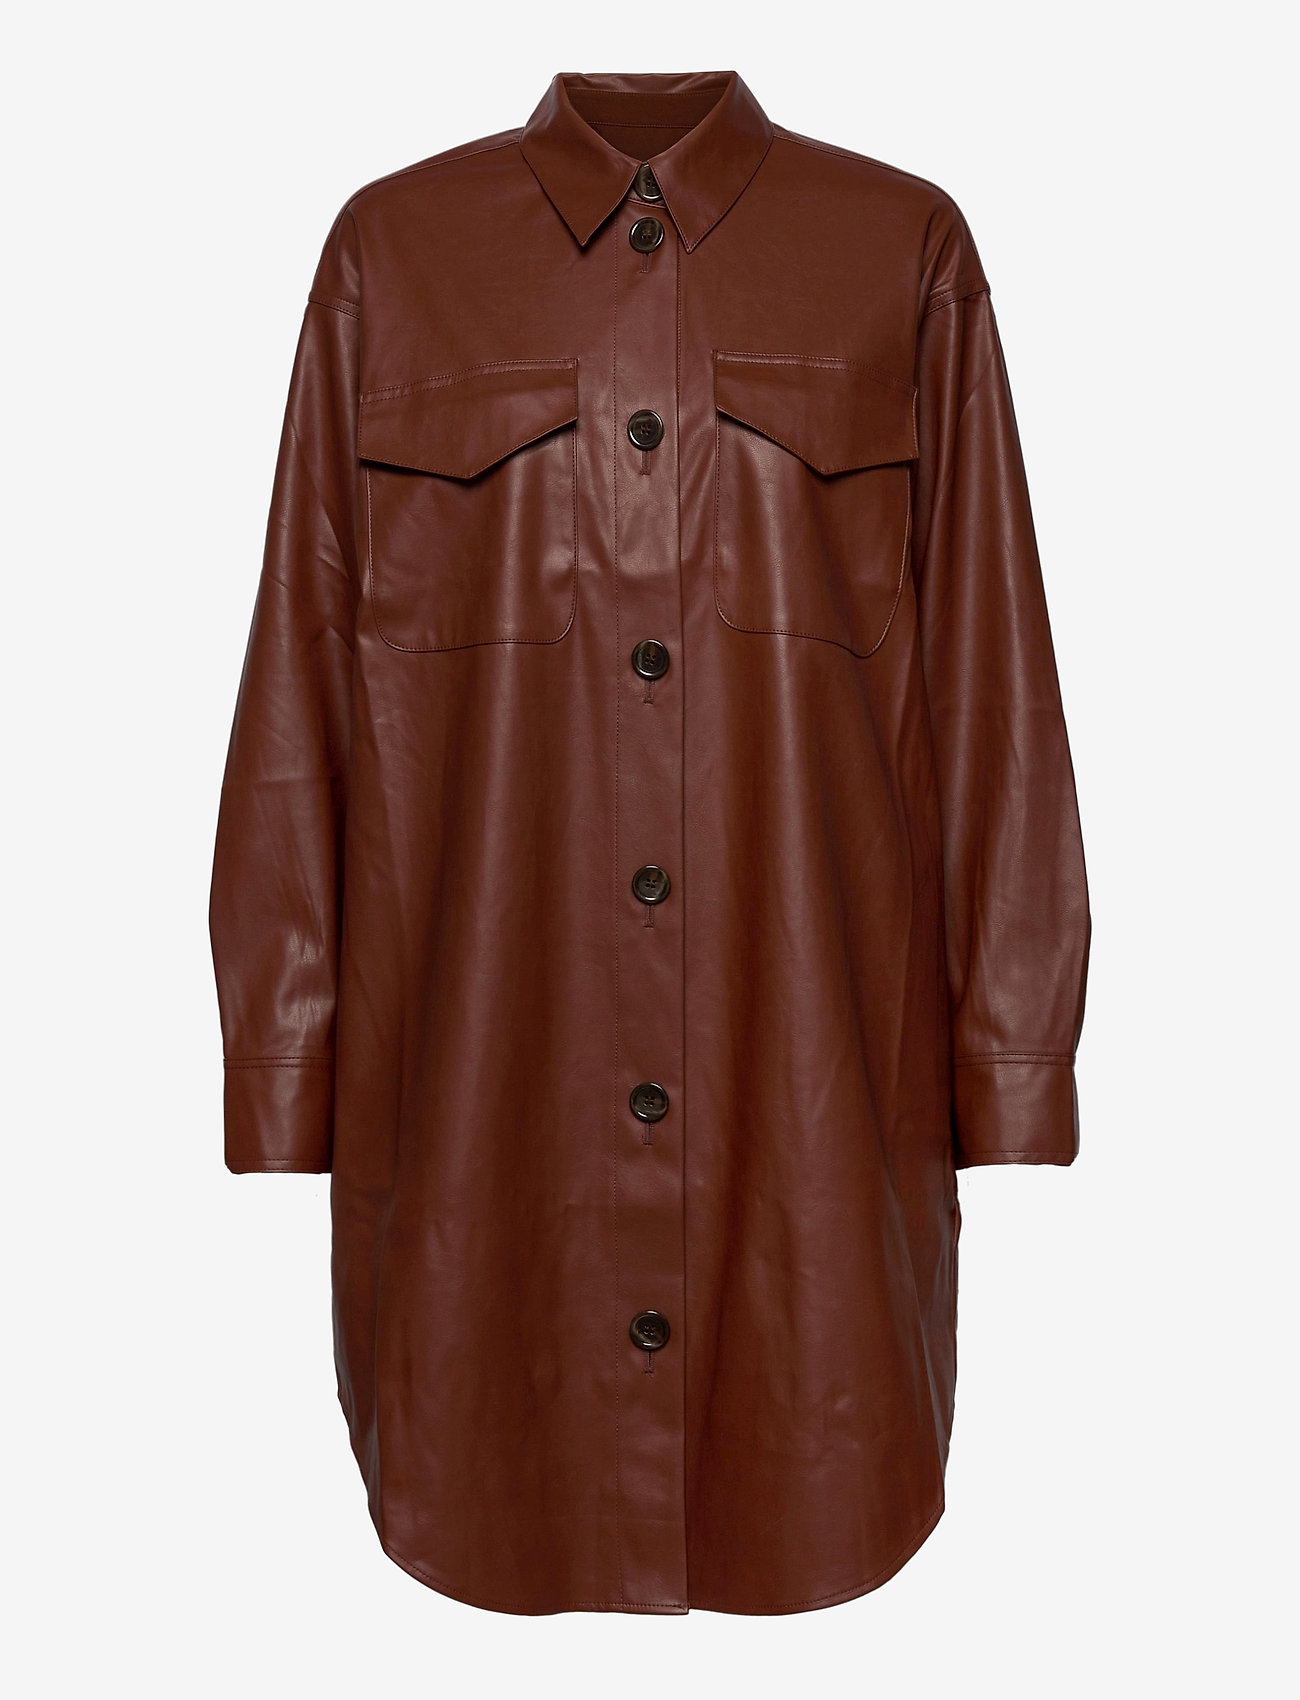 DESIGNERS, REMIX - Marie Shirt Dress - shirt dresses - brown - 0